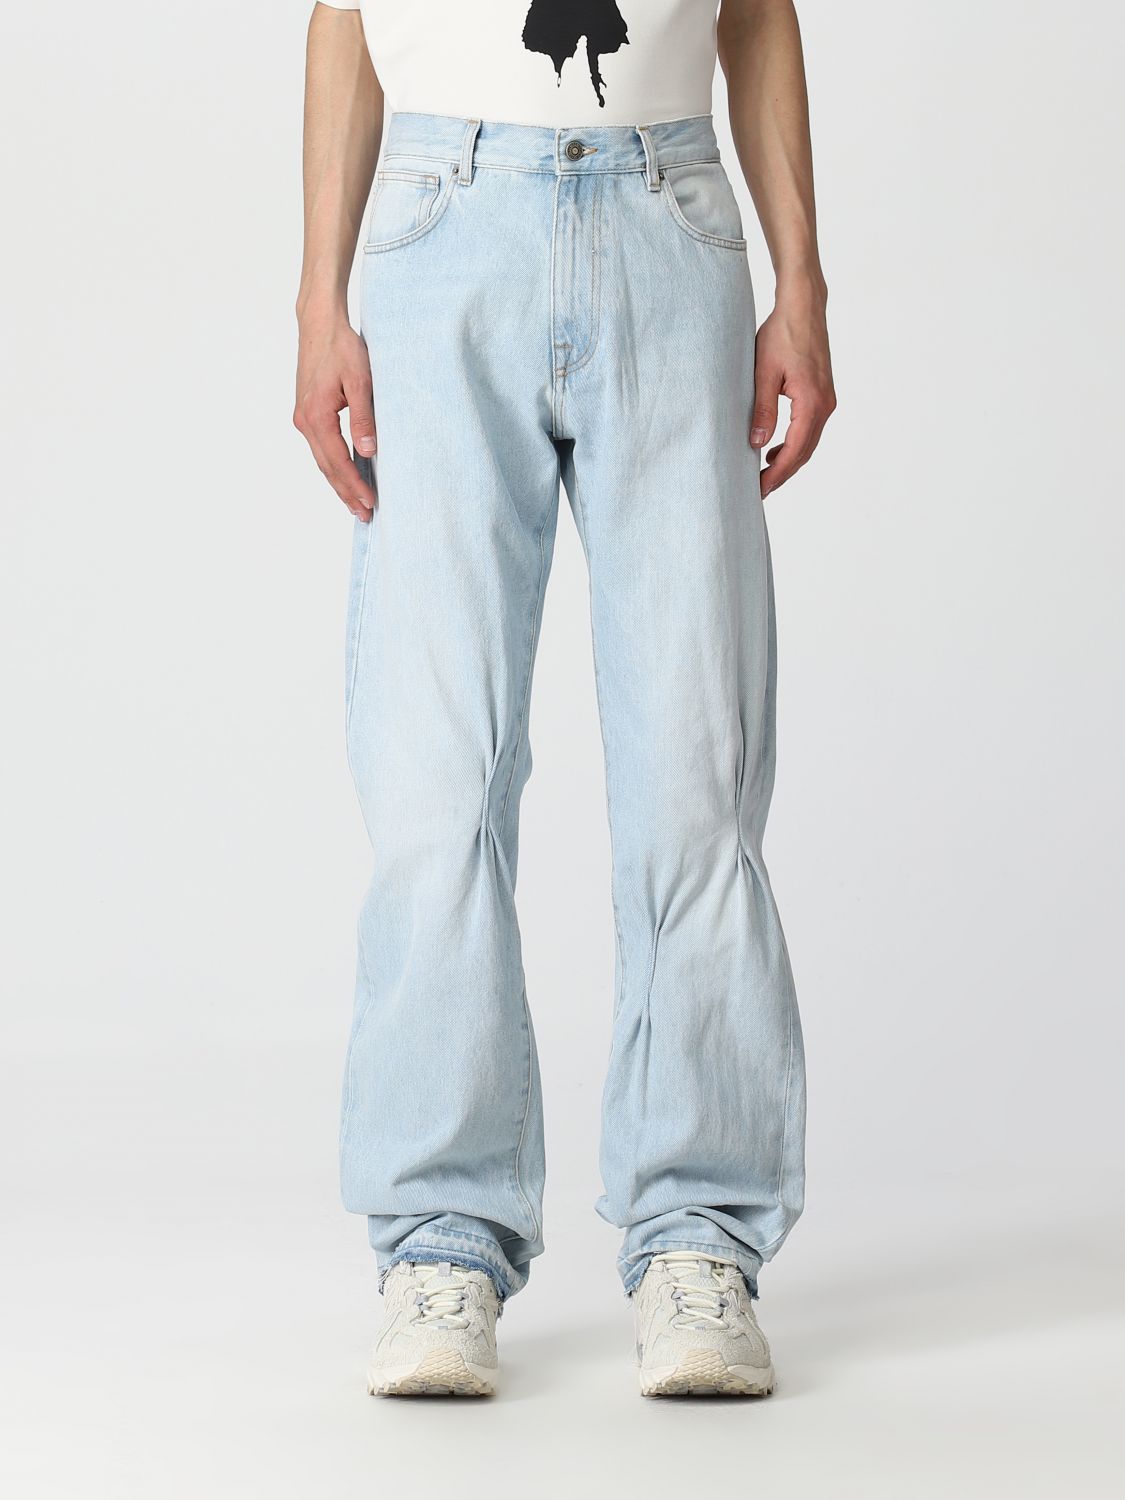 424: jeans for man - Blue | 424 jeans 34424PJ01L1236061 online on ...